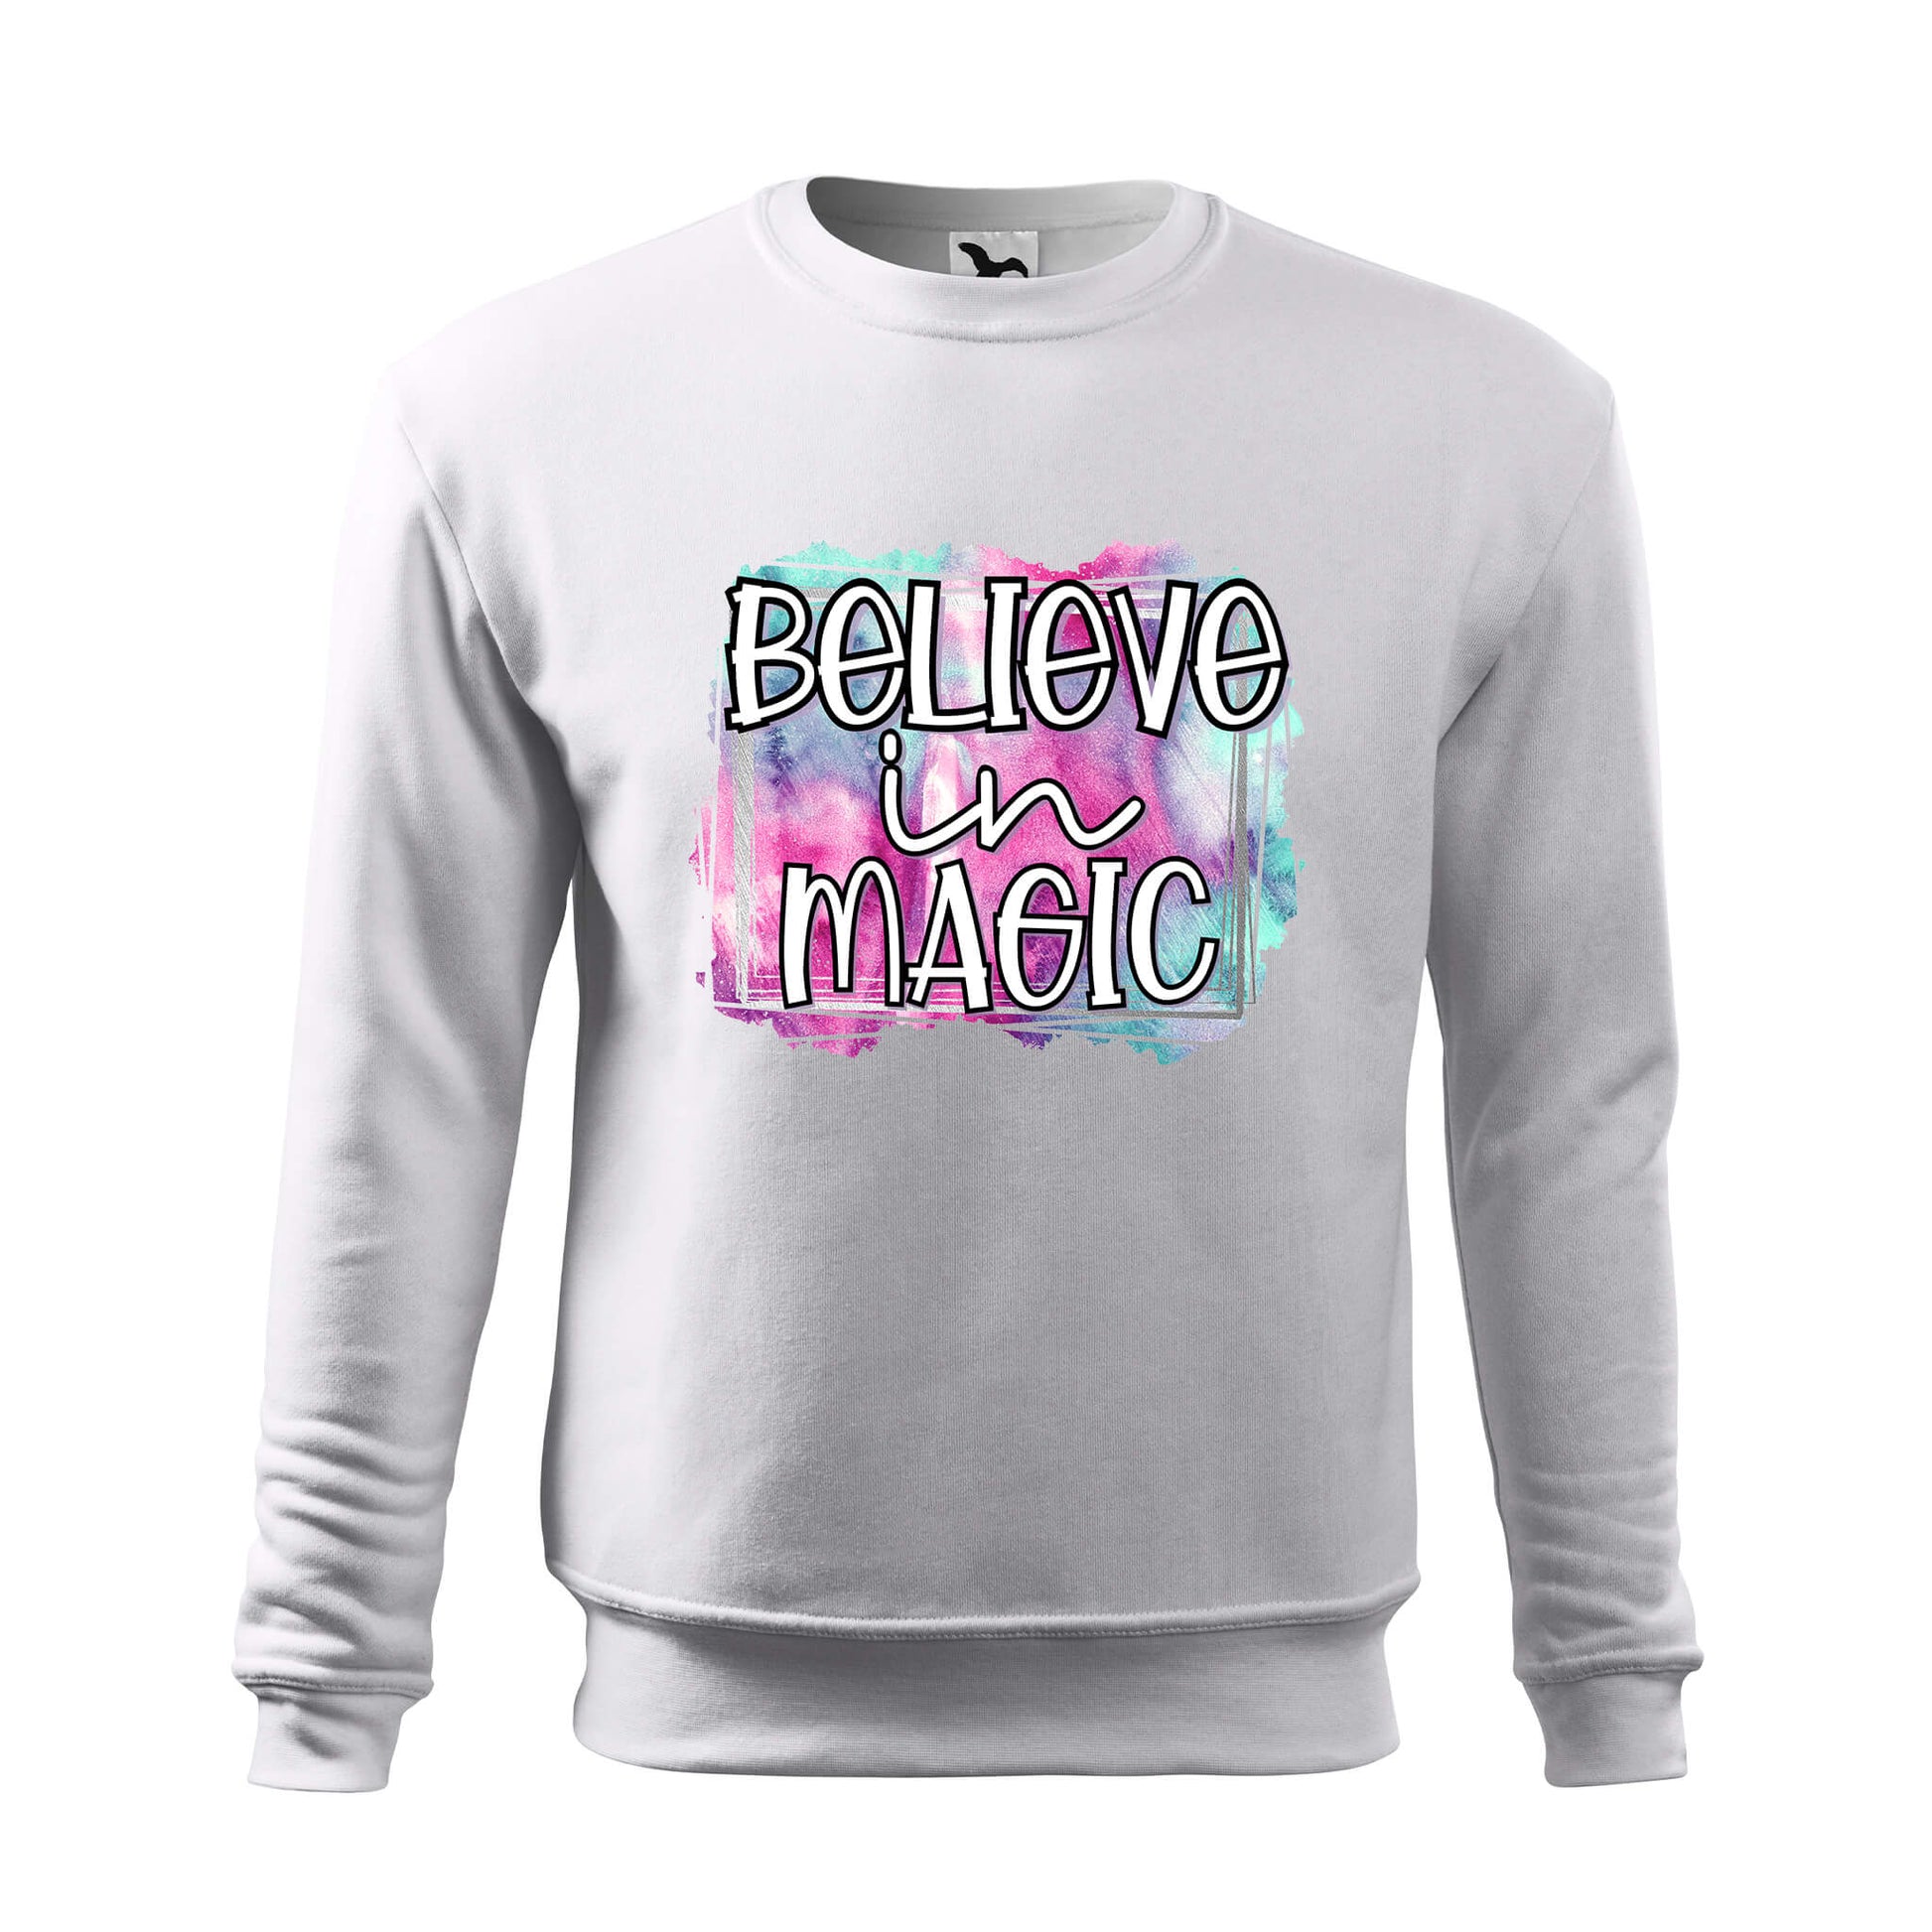 Believe in magic sweatshirt - rvdesignprint